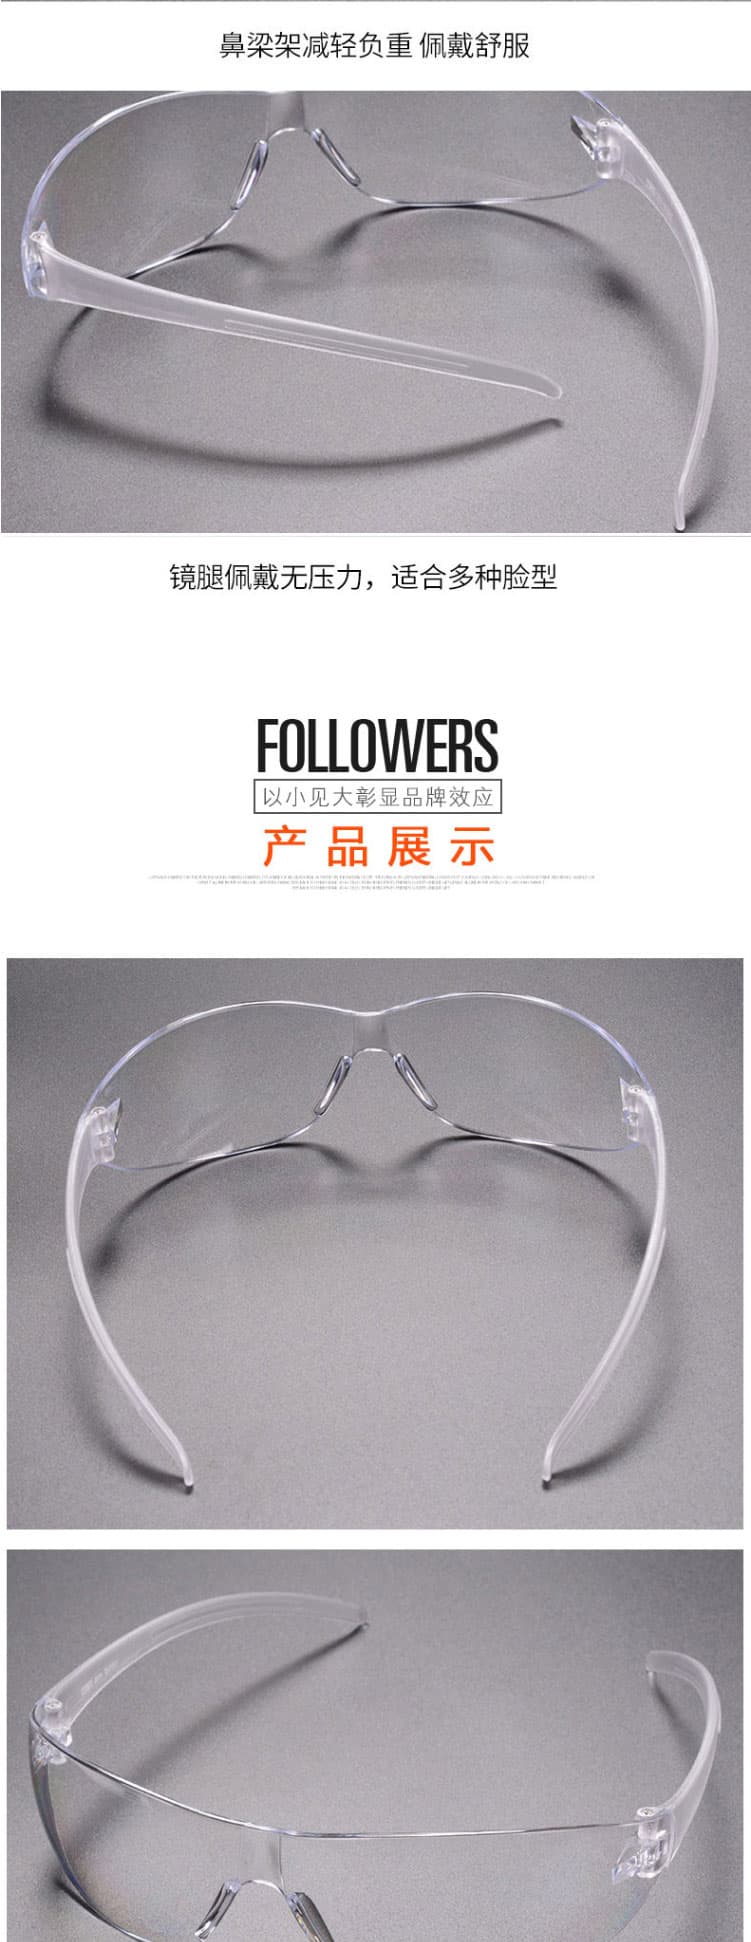 梅思安 9913279 百固-C防紫外线眼镜